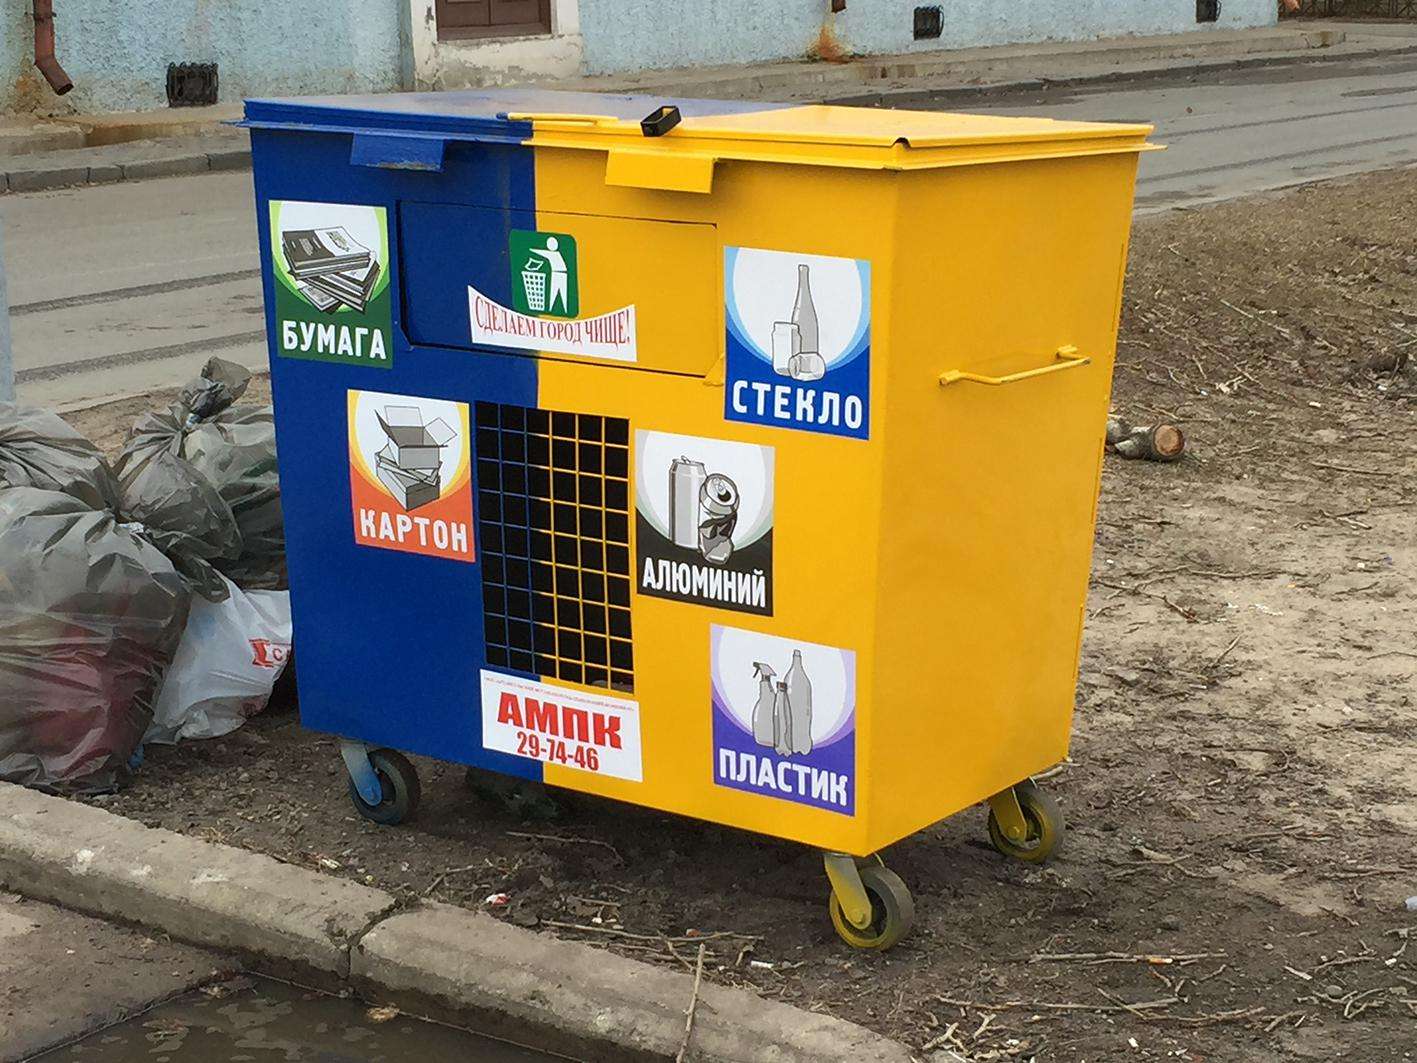 Garbage in Arkhangelsk